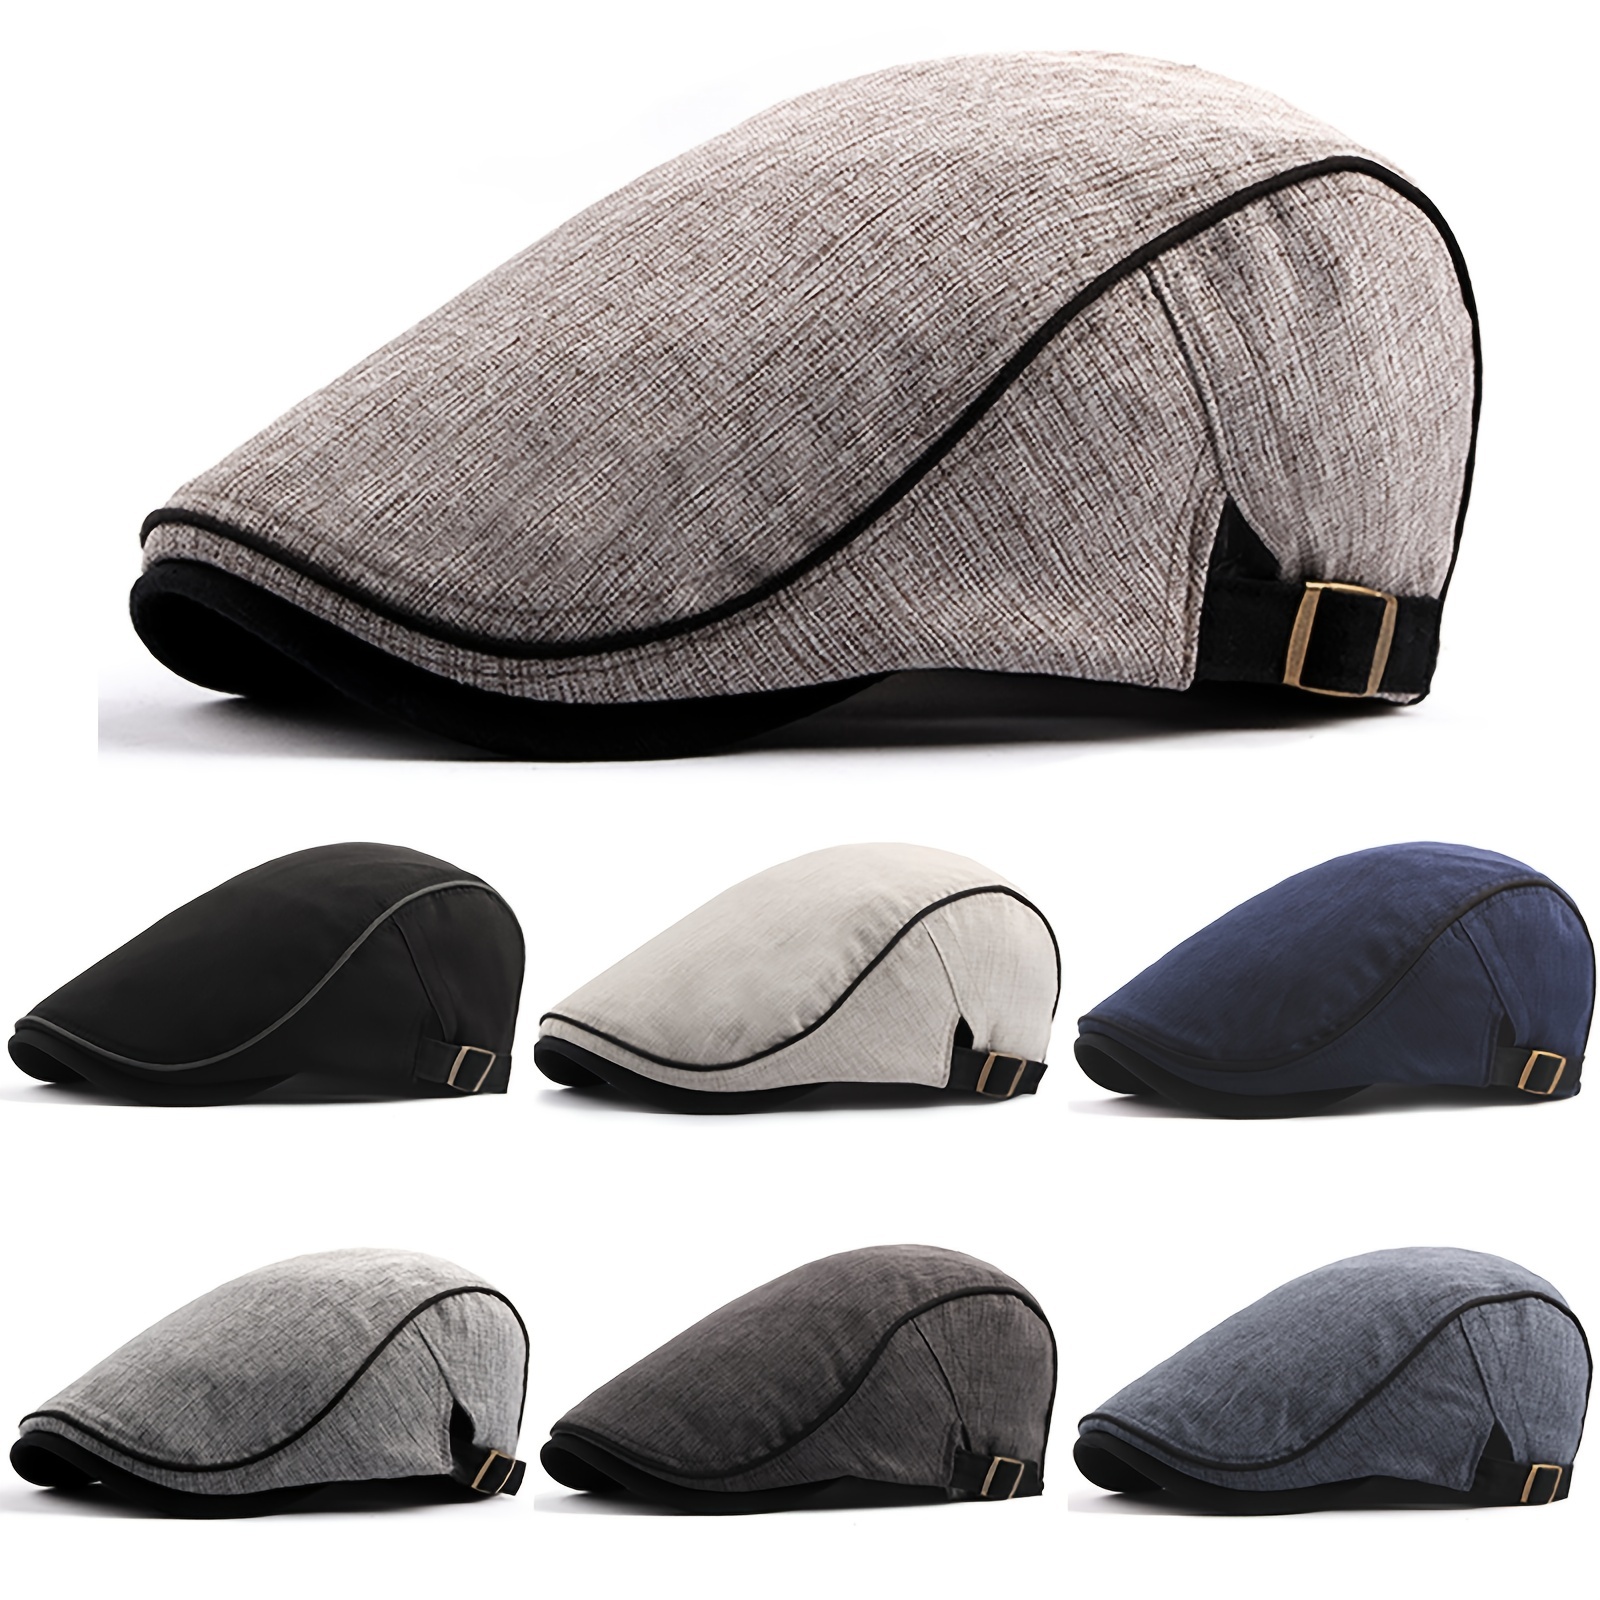 Pălării pentru bărbați, șapcă plată, reglabilă, respirabilă, cabbie irlandez, căciulă de vânătoare Gatsby, alegerea ideală pentru cadouri